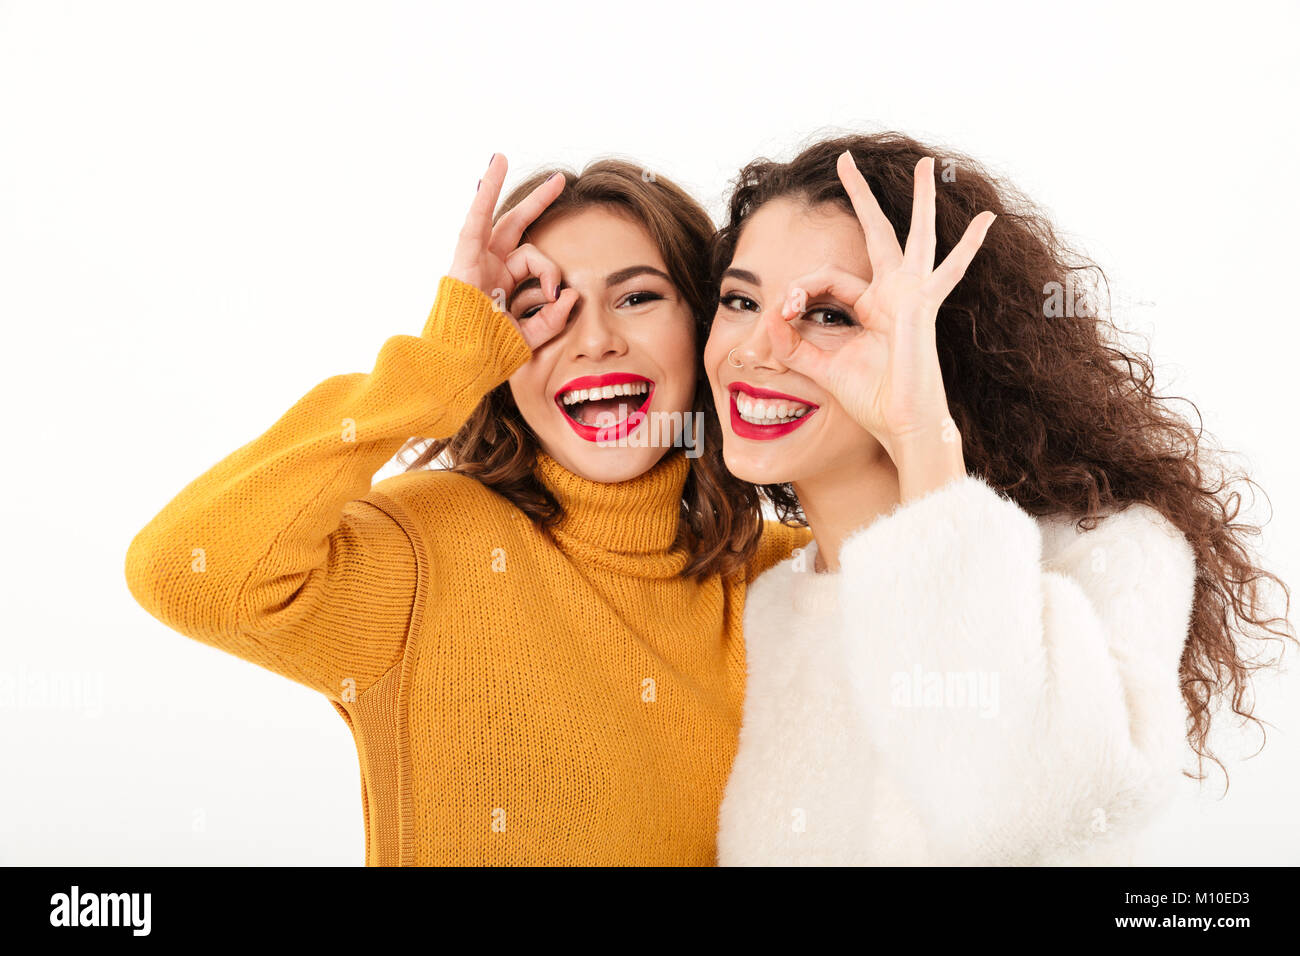 Immagine di due ragazze felici in maglioni divertendosi e mostrando i gesti ok mentre guardando la telecamera su sfondo bianco Foto Stock